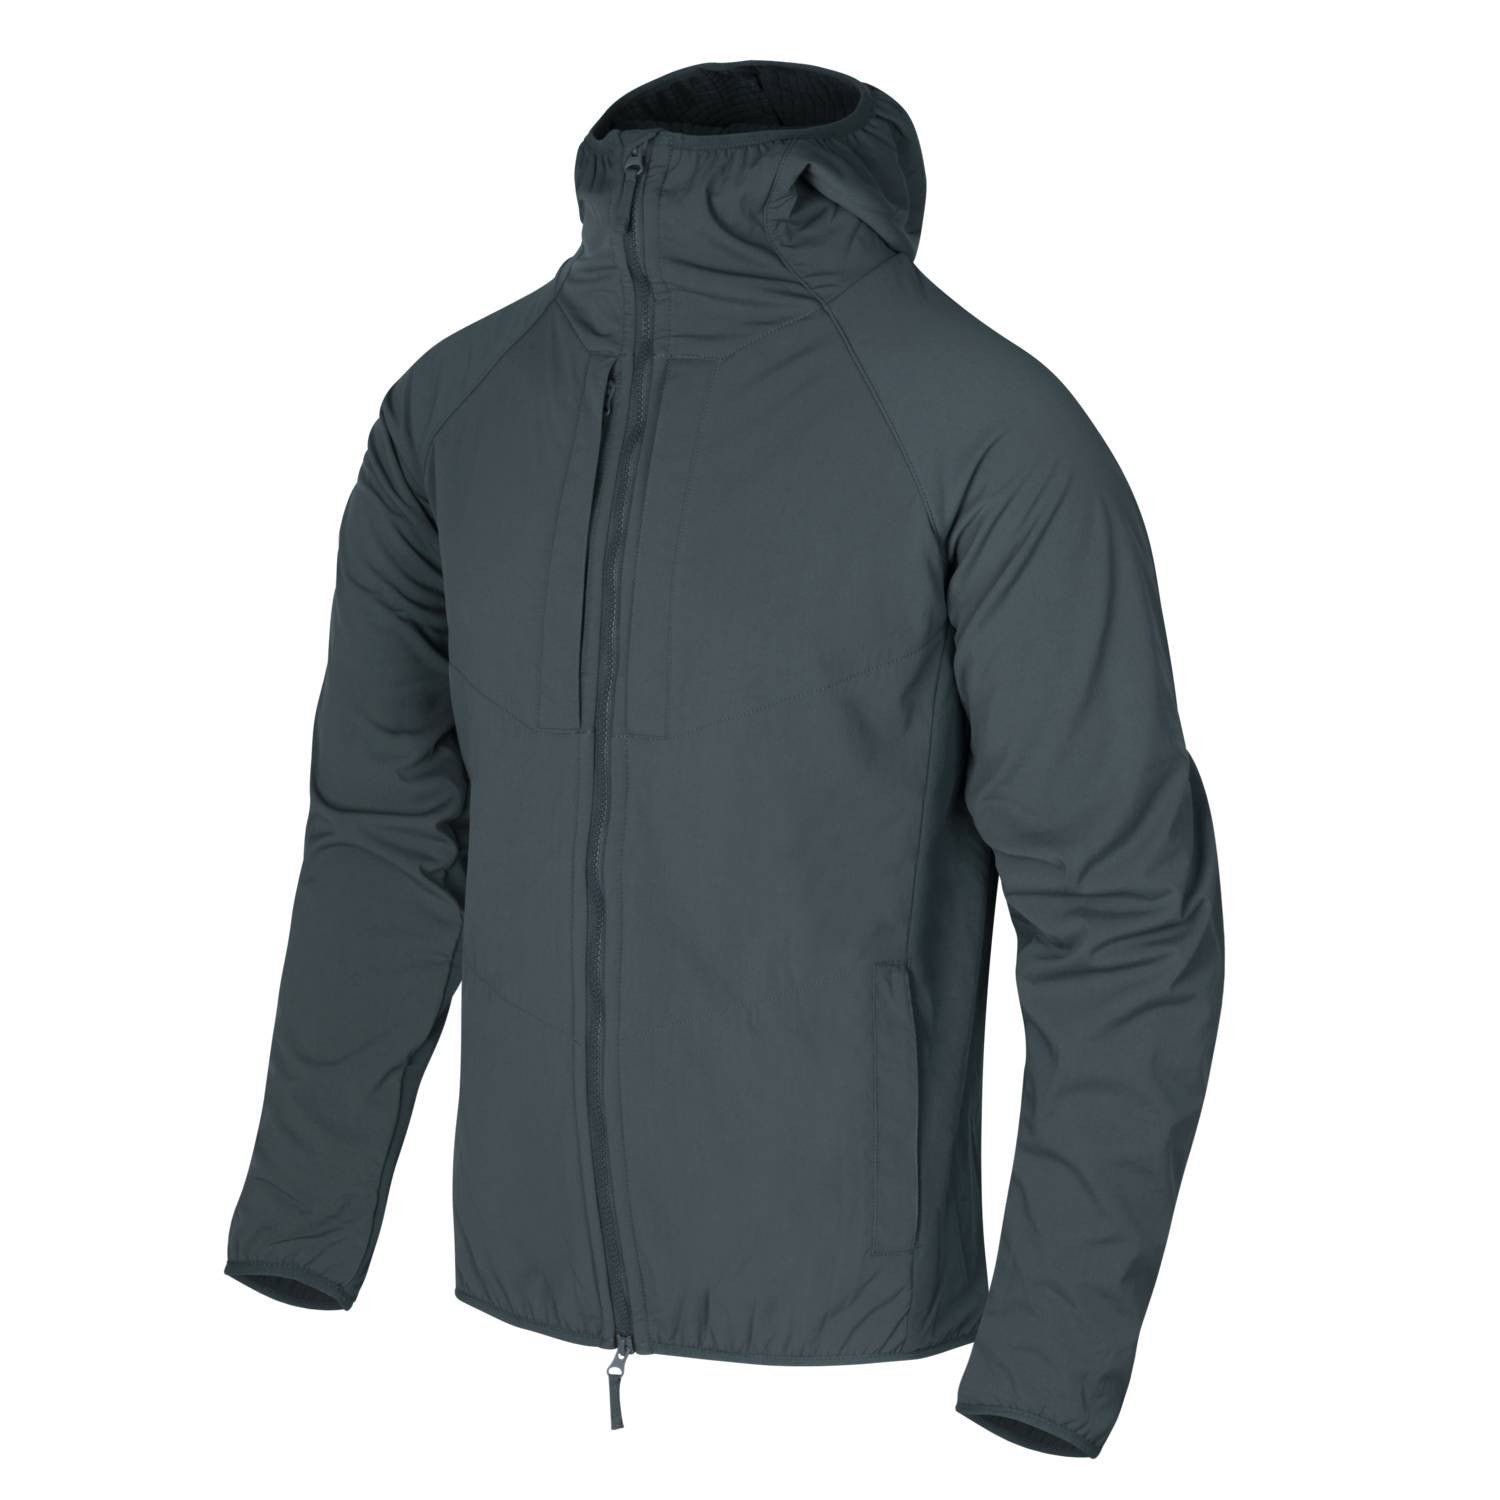 Urban Hybrid Softshell Jacket® - StormStretch® - Shadow Grey